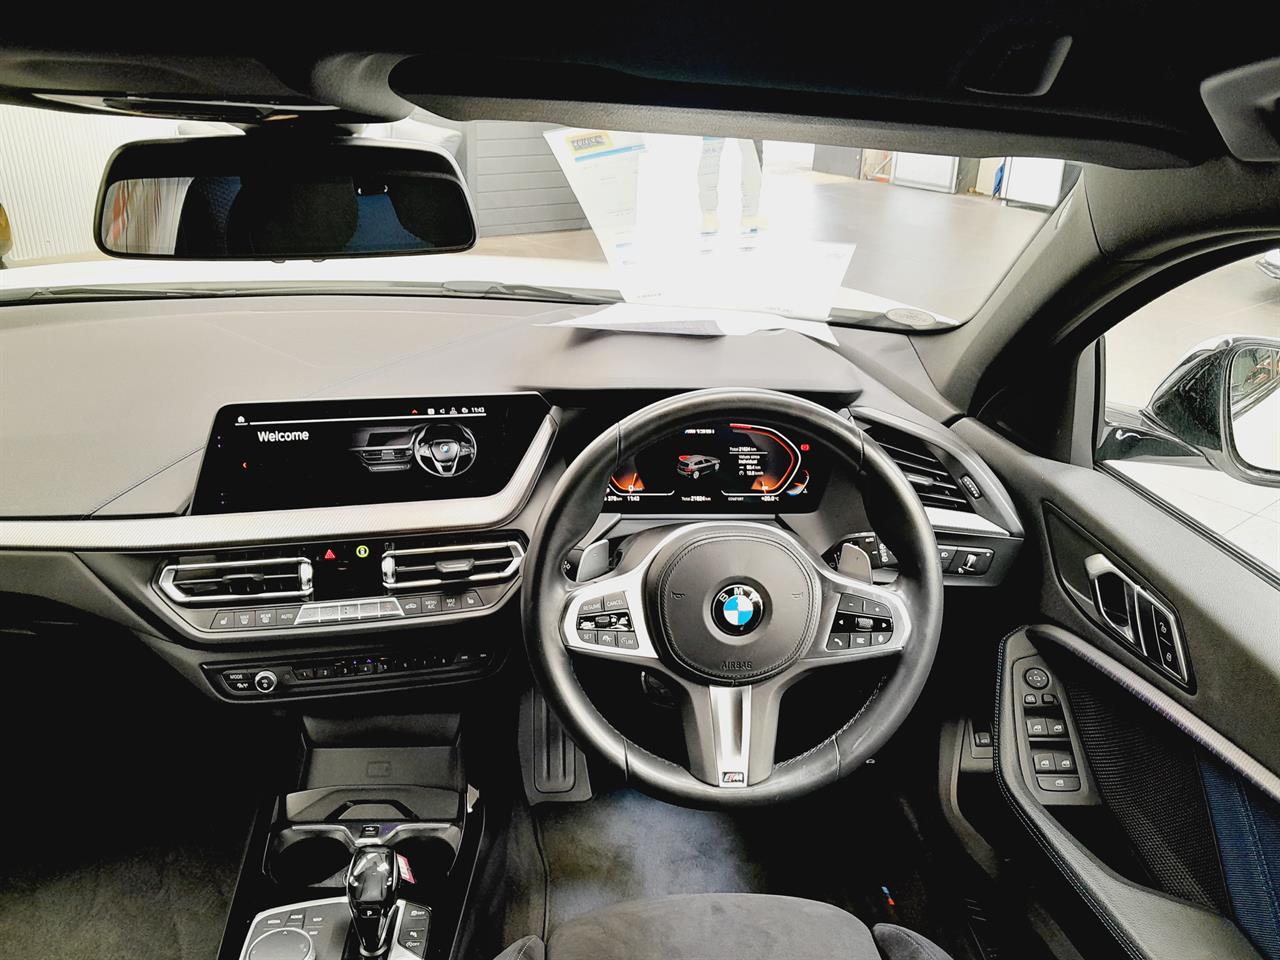 2020 BMW M135i